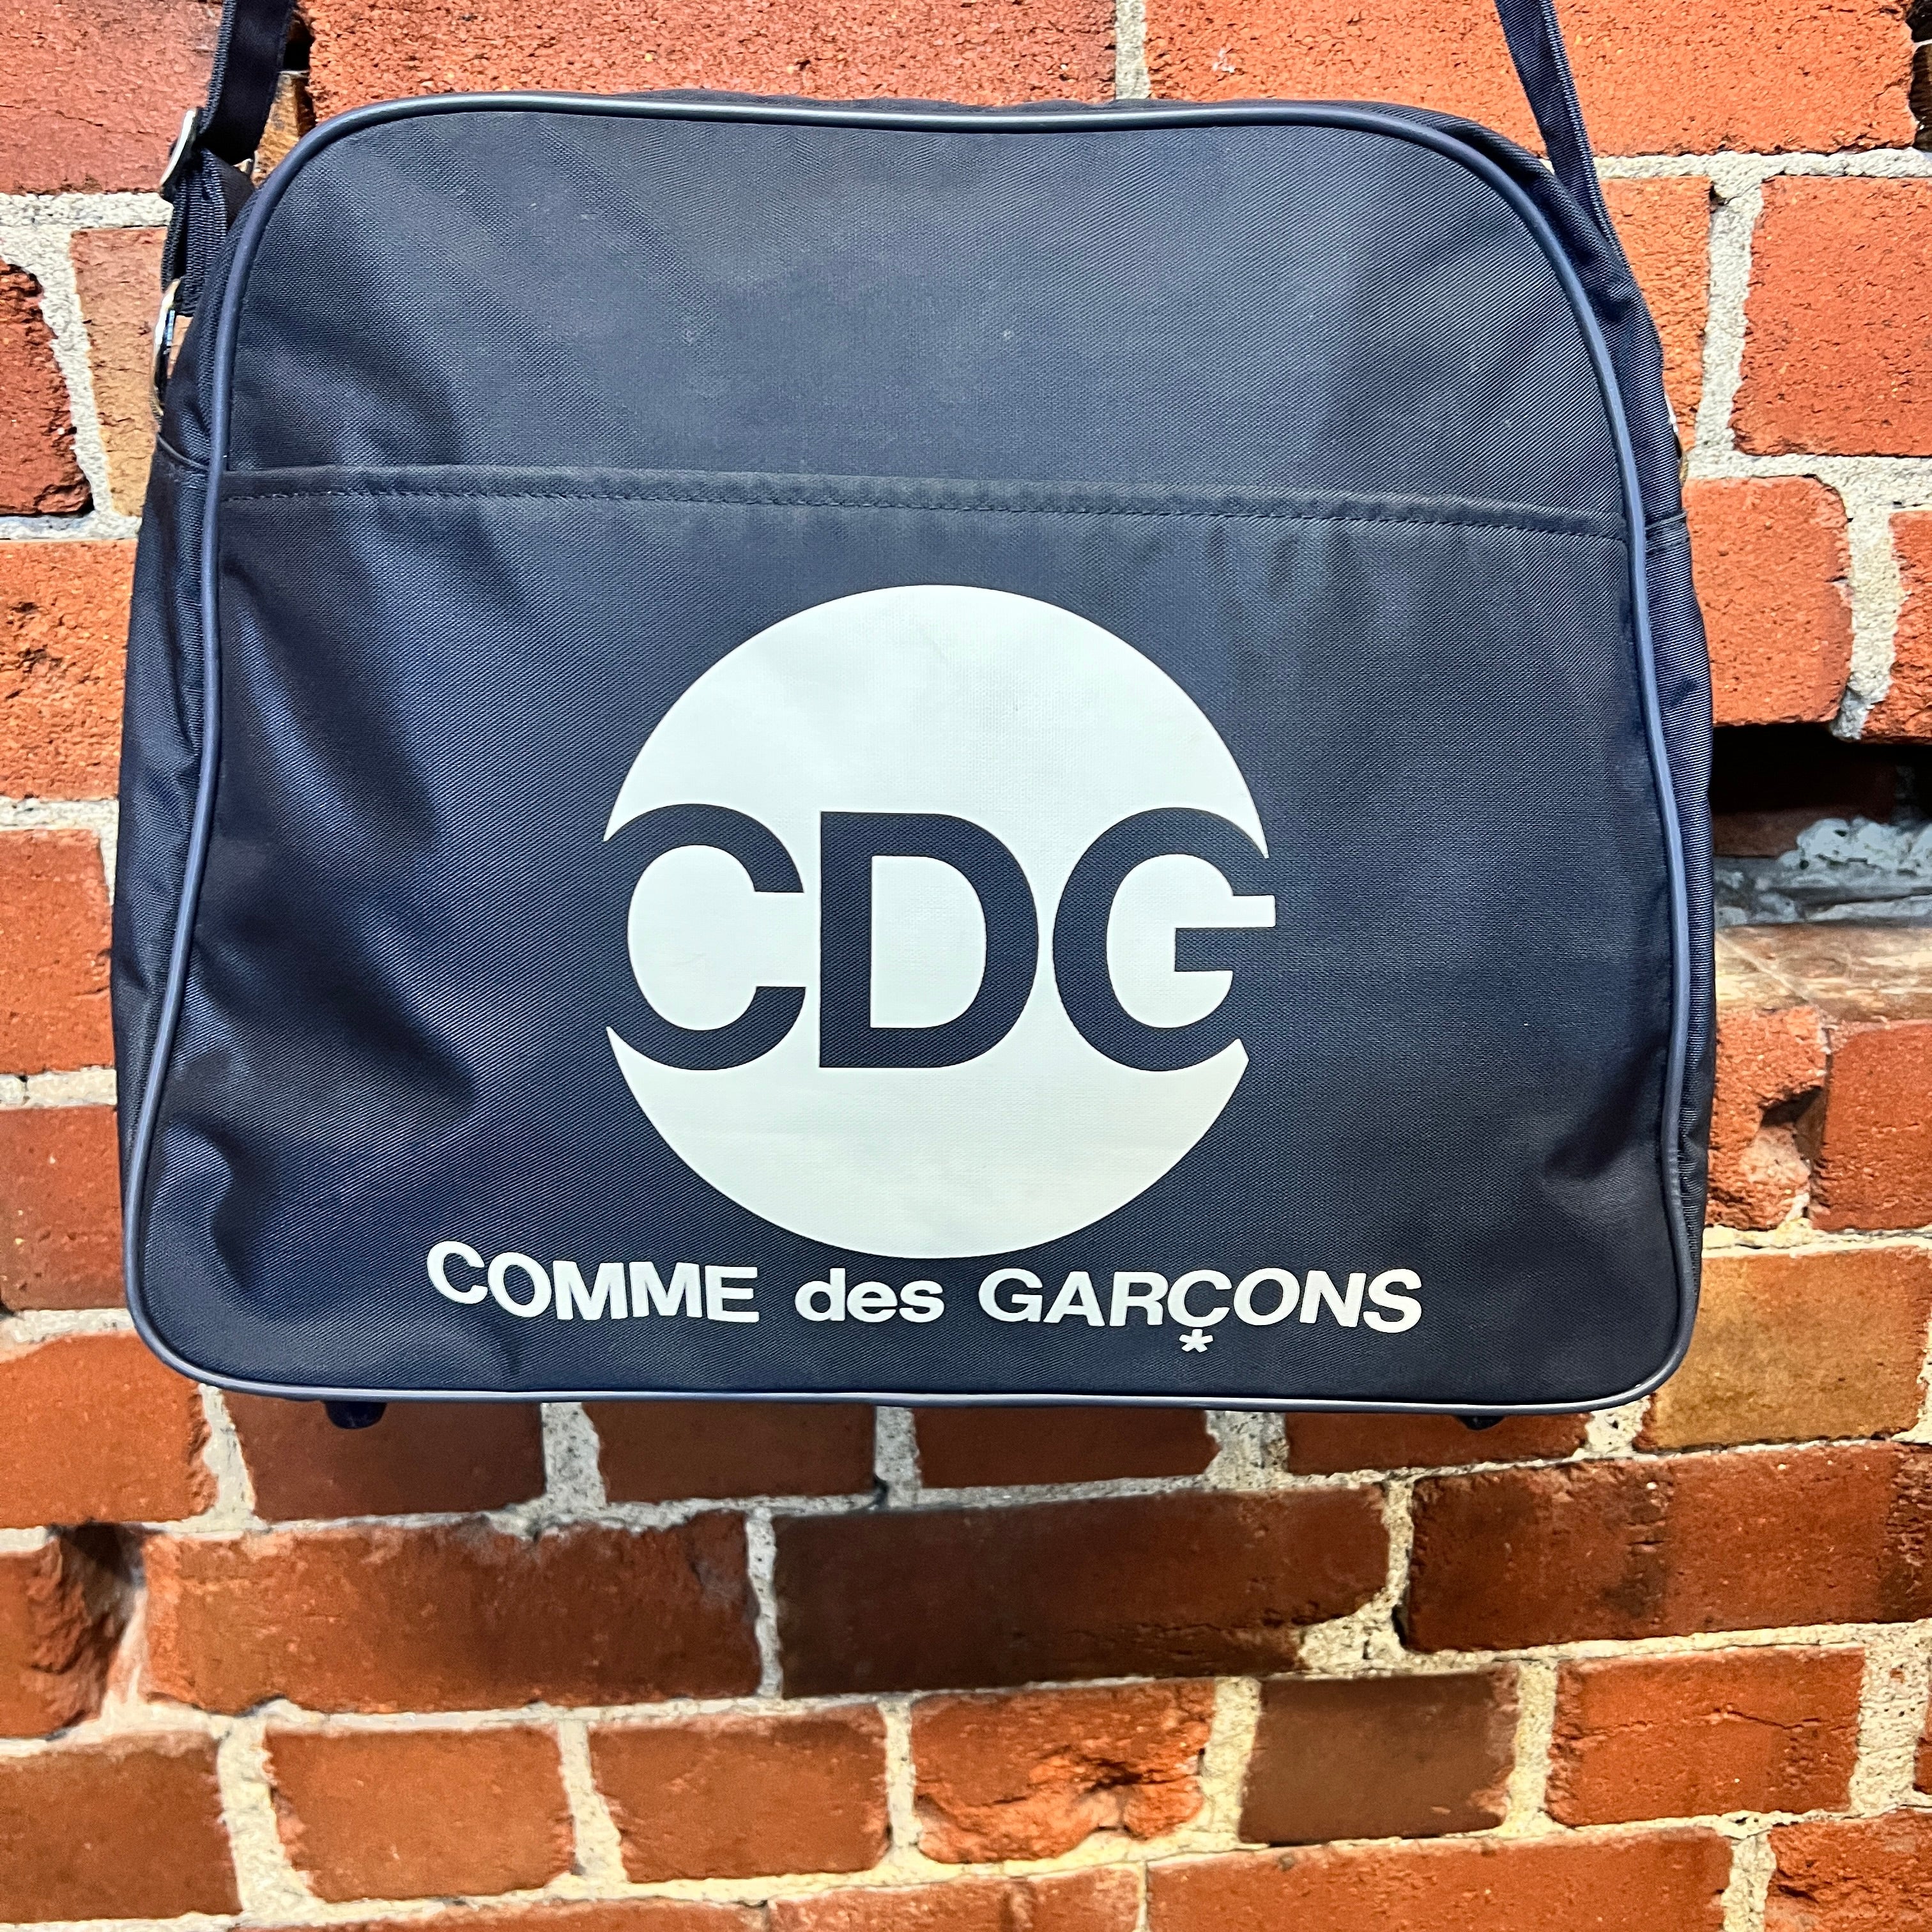 COMME DES GARCONS 1990's satchel bag